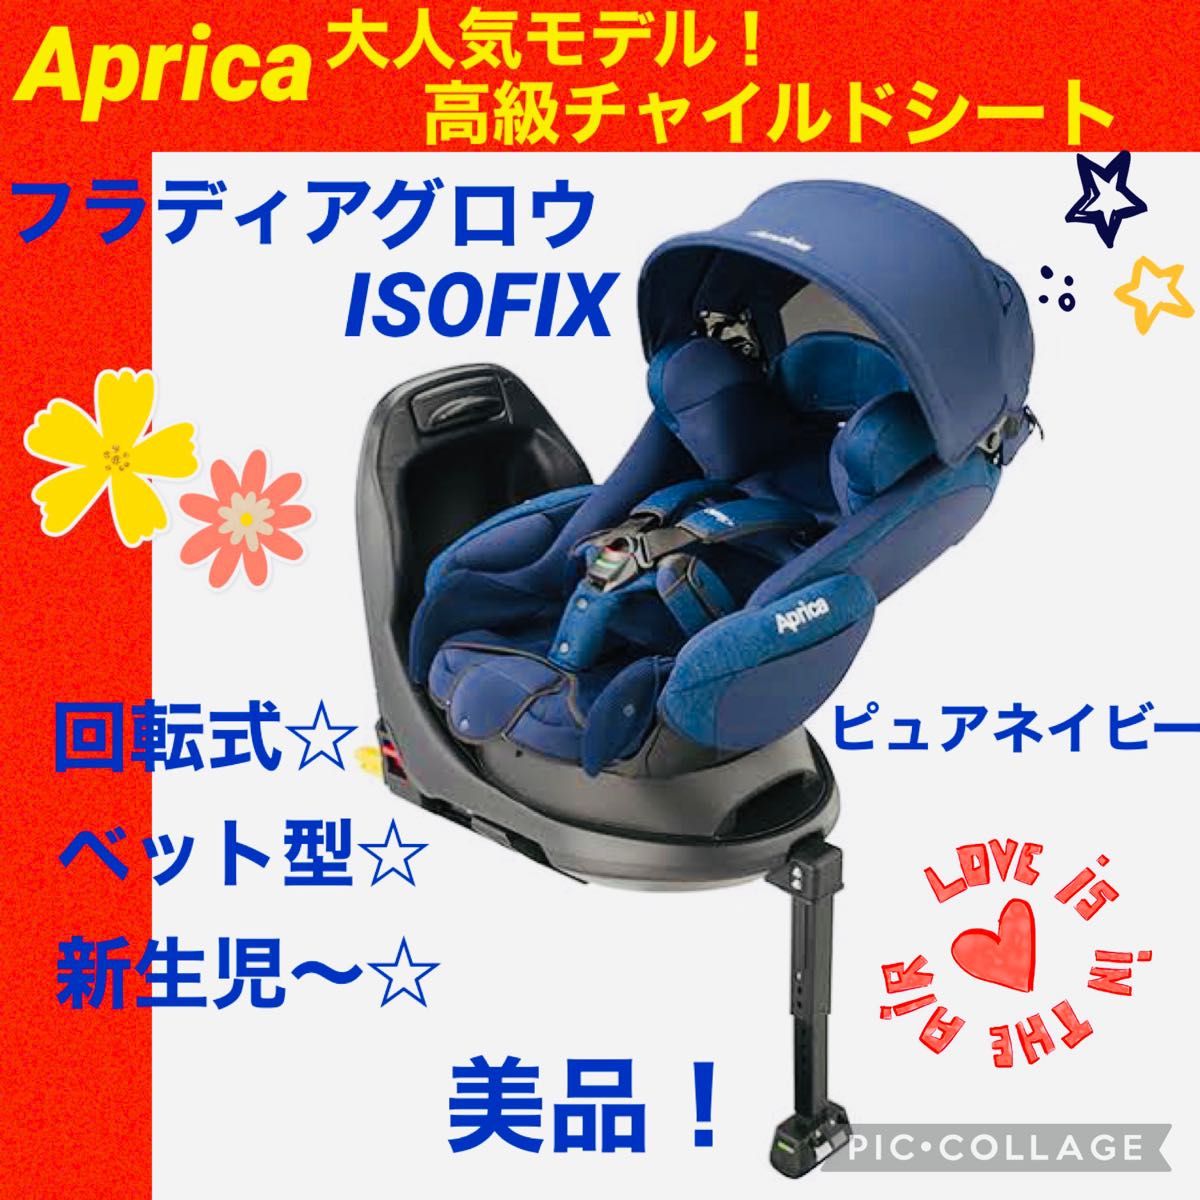 50様用 【良品】Aprica クルリラ プレミアム ISOFIX 全品限定セール